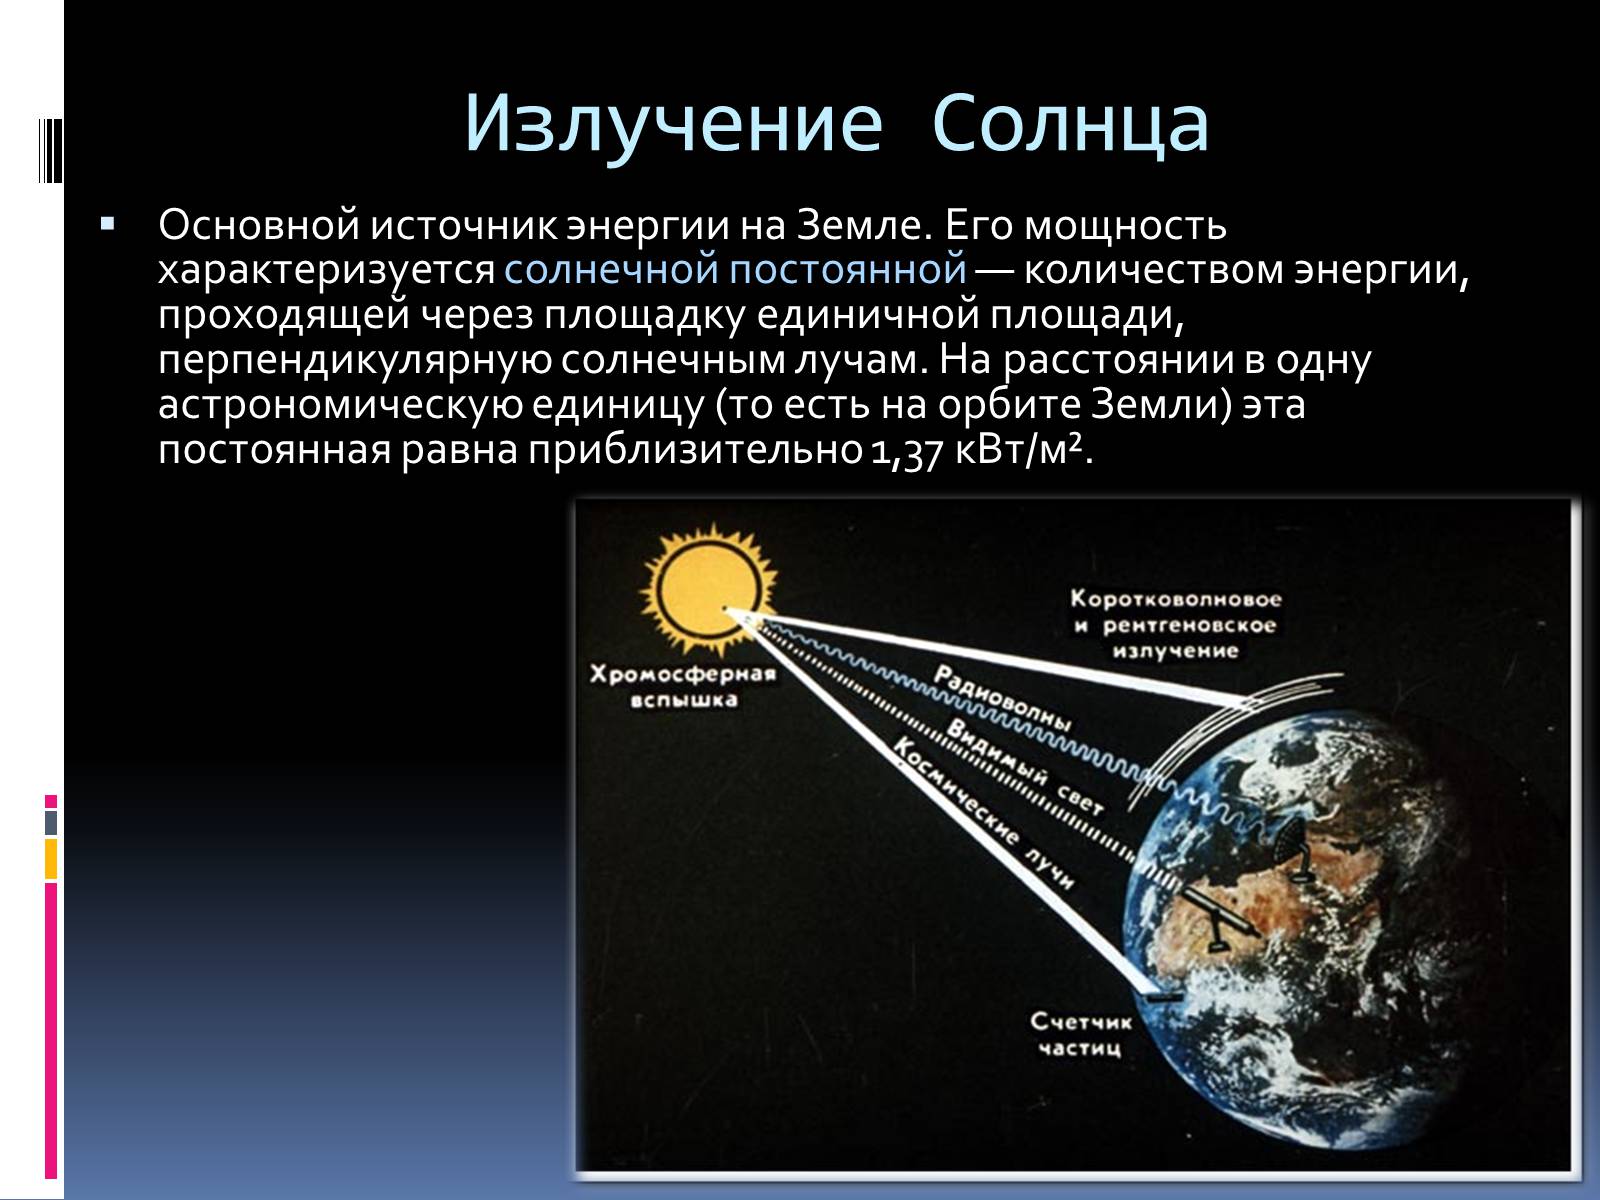 Основным источником видимого излучения солнца. Излучение солнца. Излучение солнца на землю. Солнечная радиация. Солнце источник излучения.